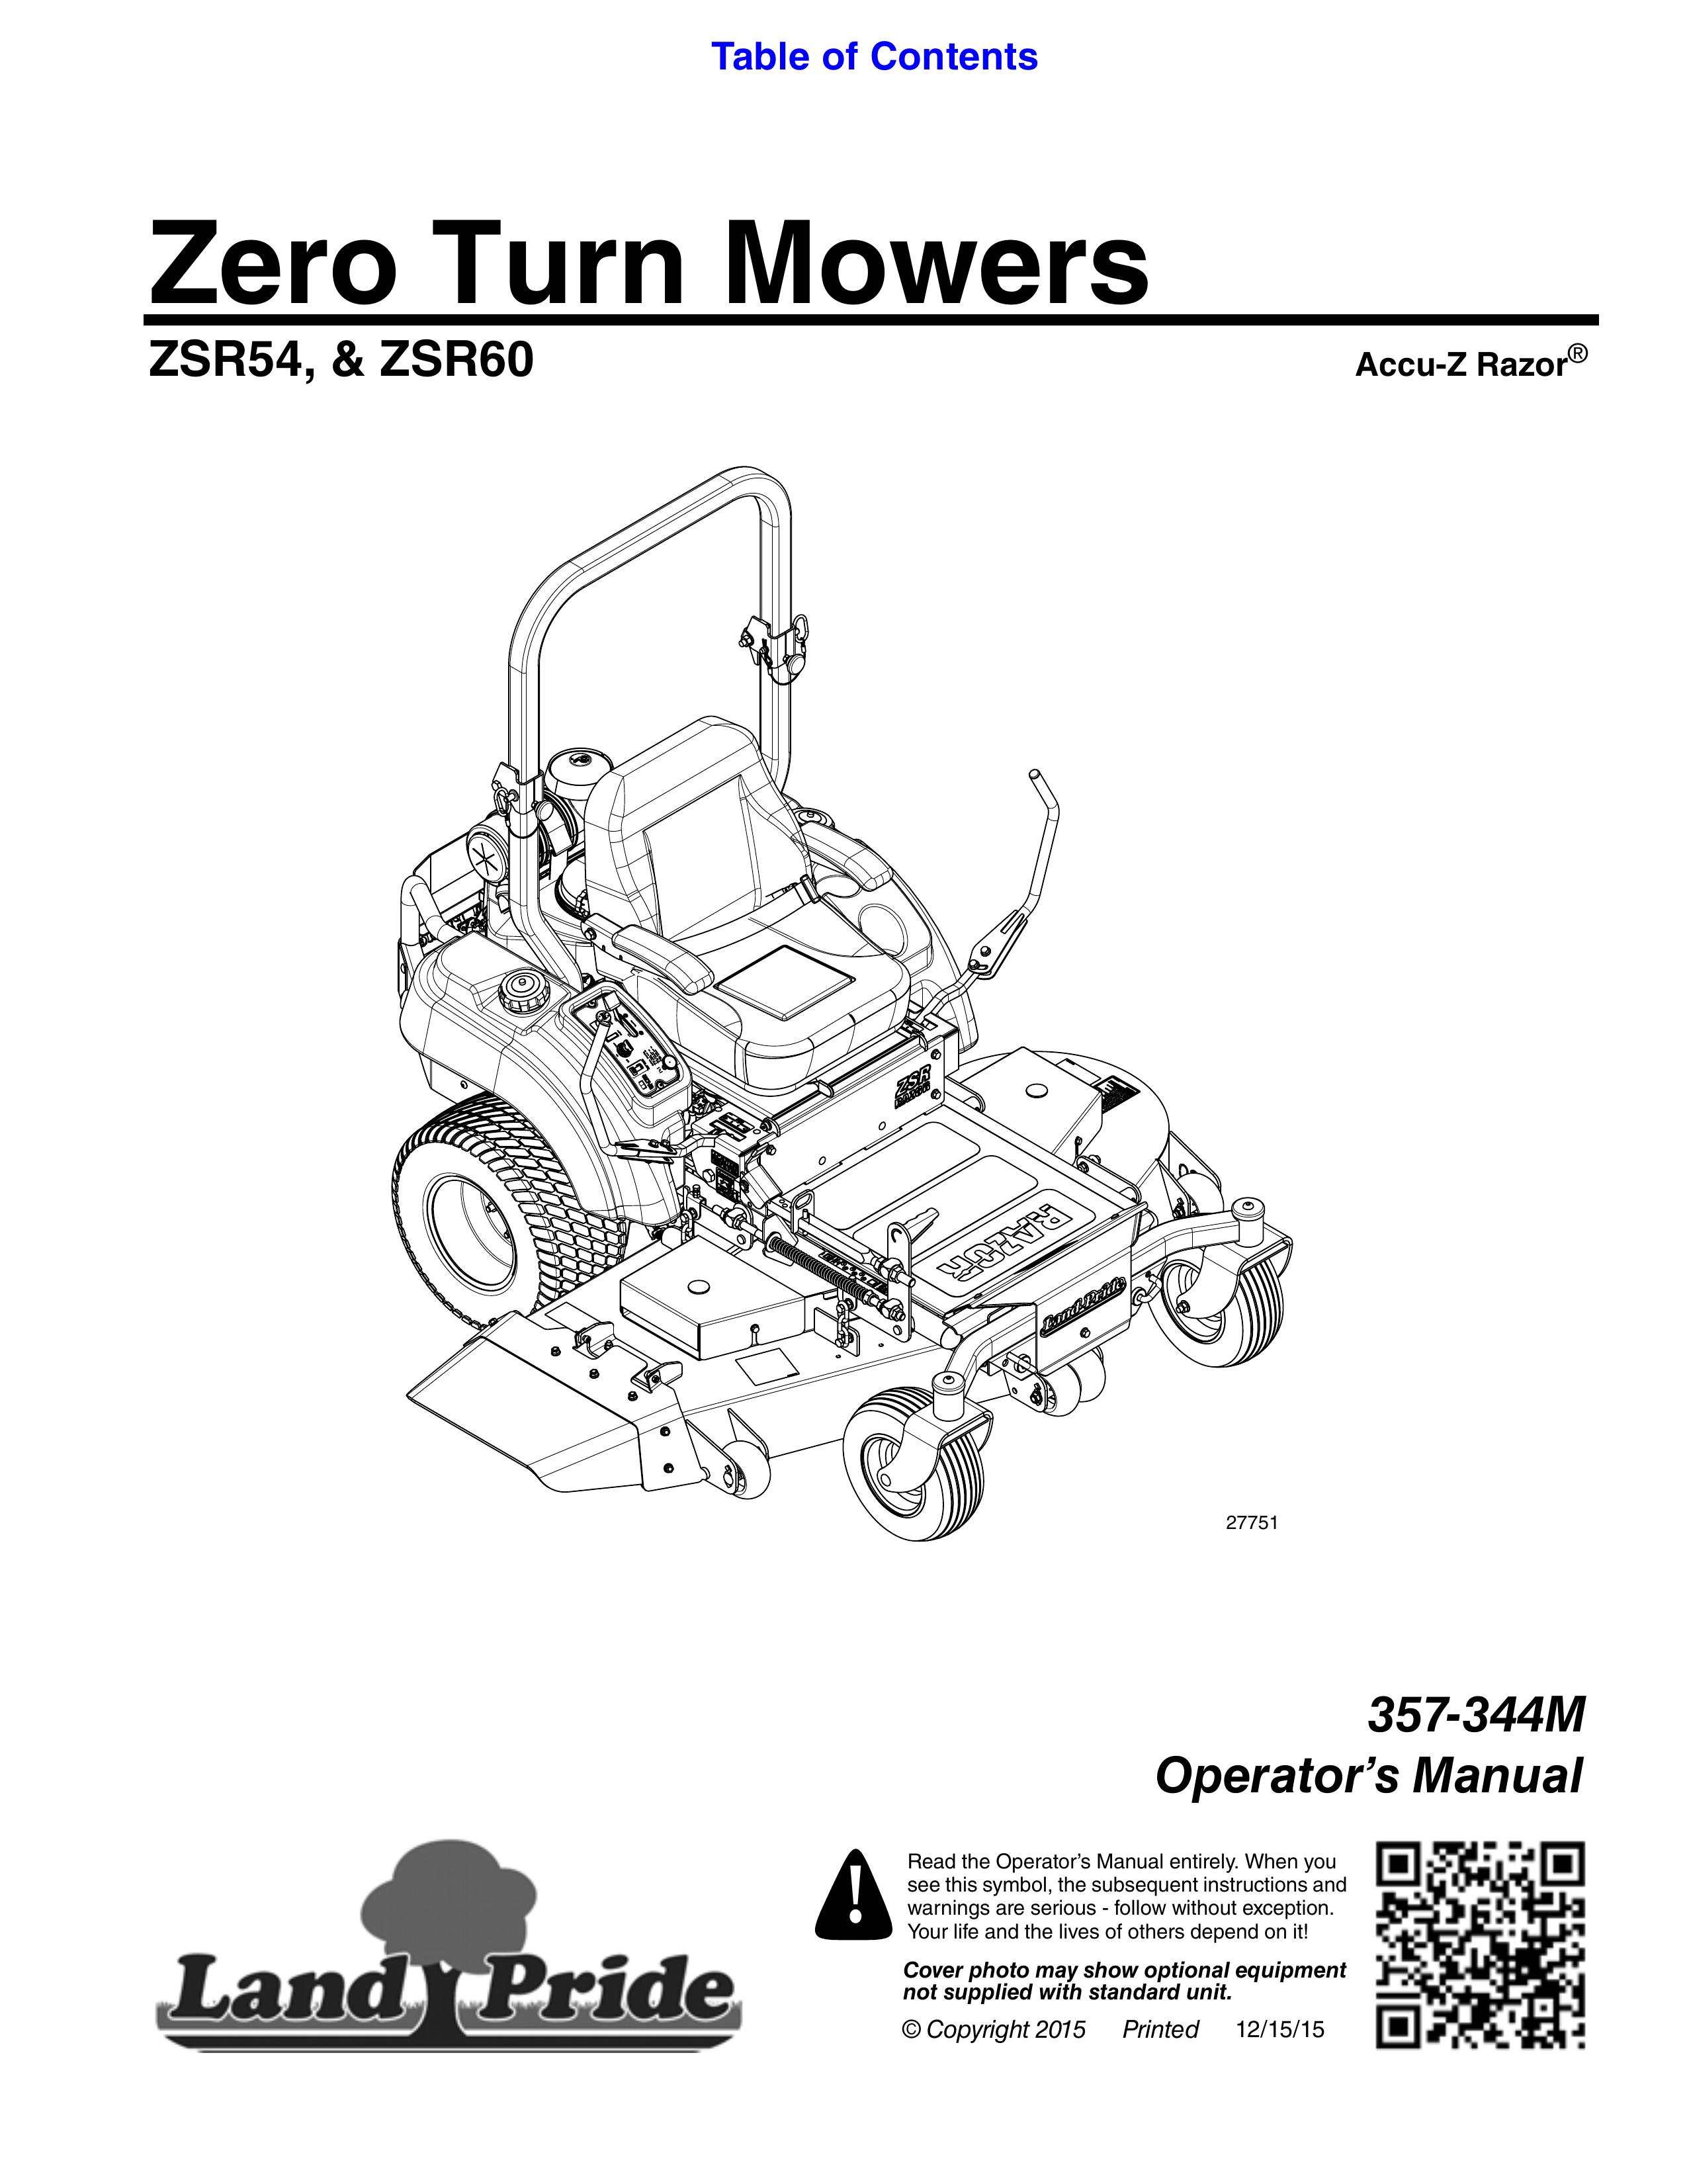 Land Pride & ZSR60 Lawn Mower User Manual